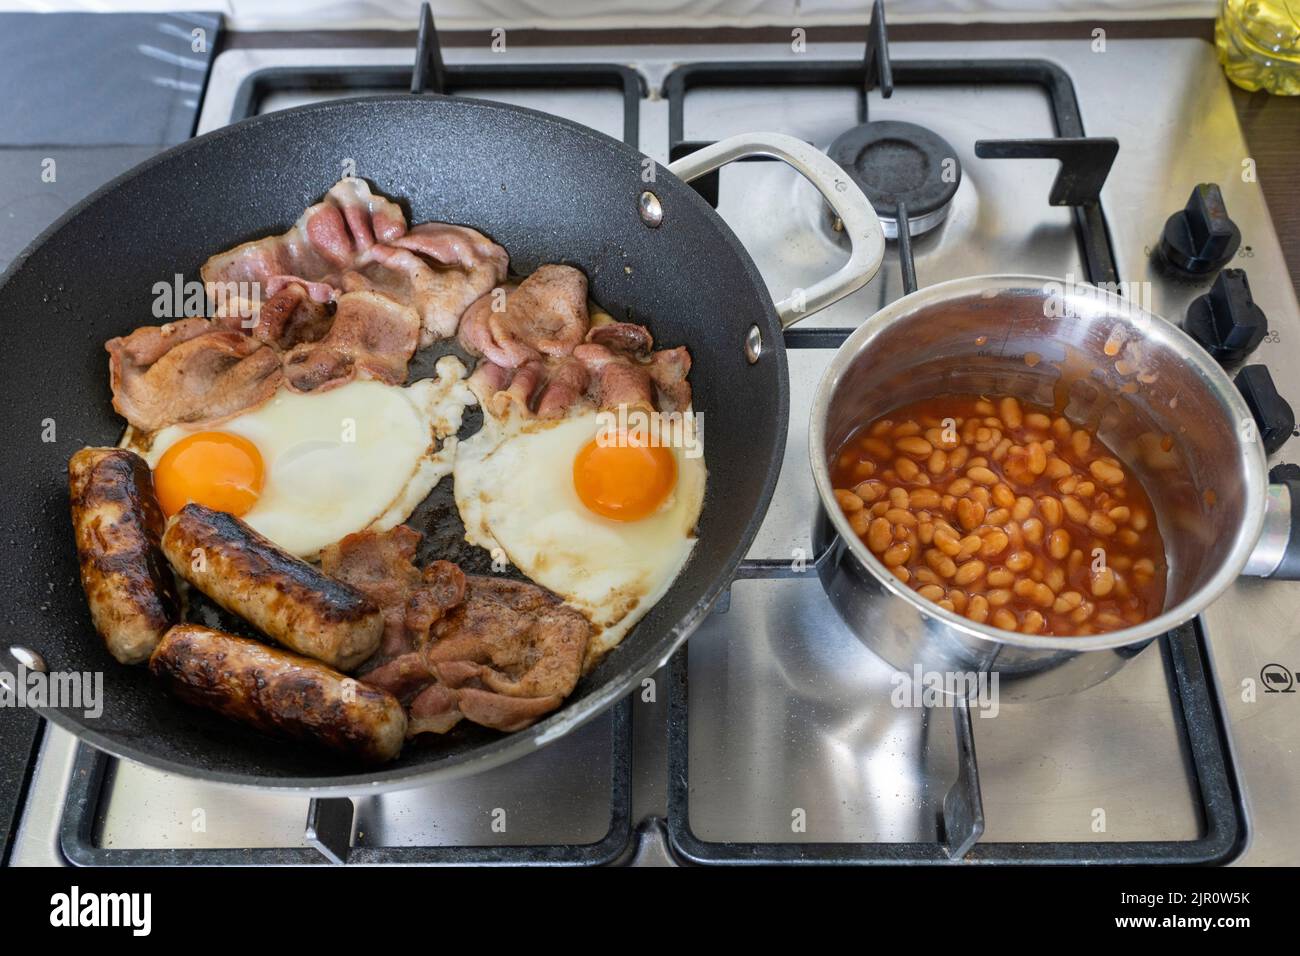 Les ingrédients traditionnels du petit-déjeuner anglais cuisent et friture sur une cuisinière à gaz. Bacon, œufs, saucisses et haricots blancs. Concept - repas gras Banque D'Images